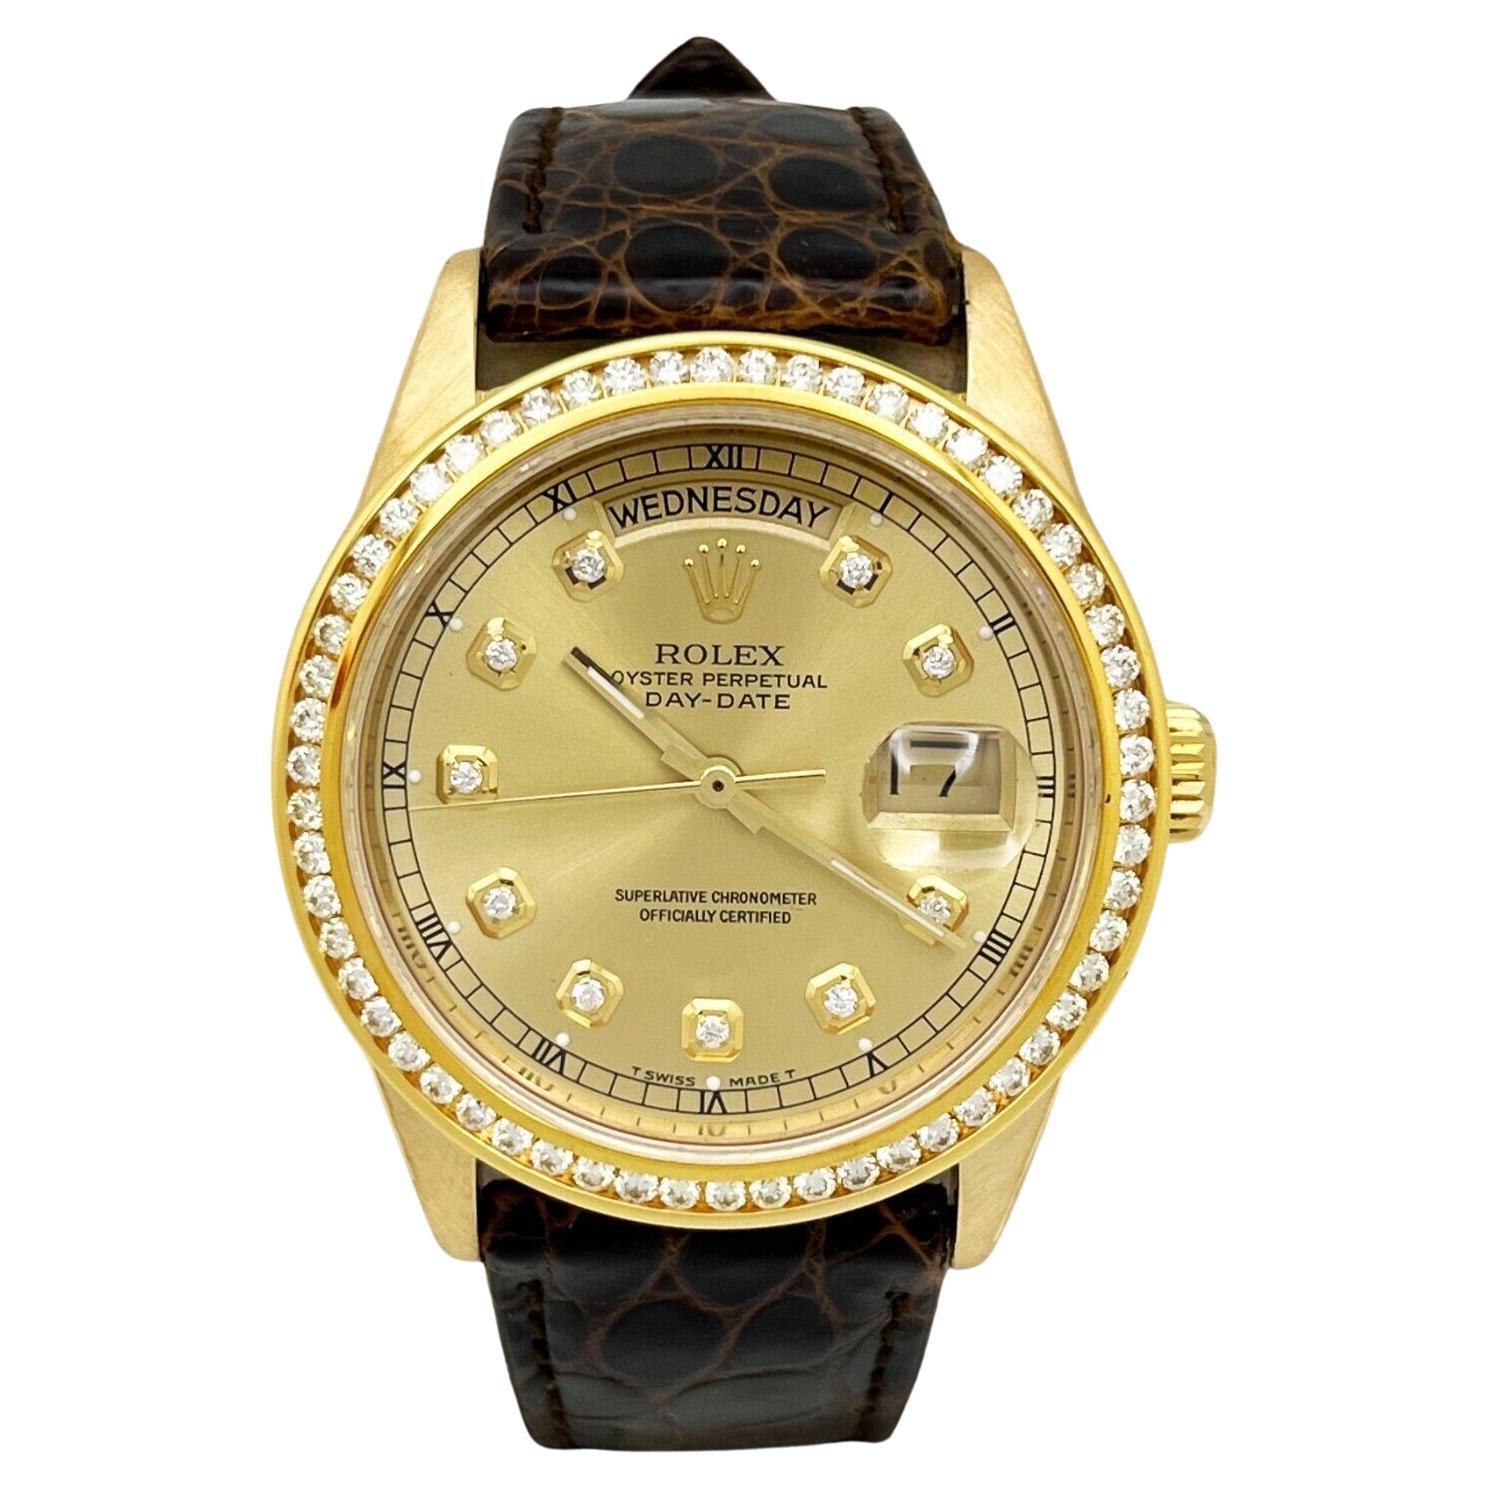 Rolex Montre President Day Date 18078 avec cadran en diamants et lunette en or jaune 18 carats